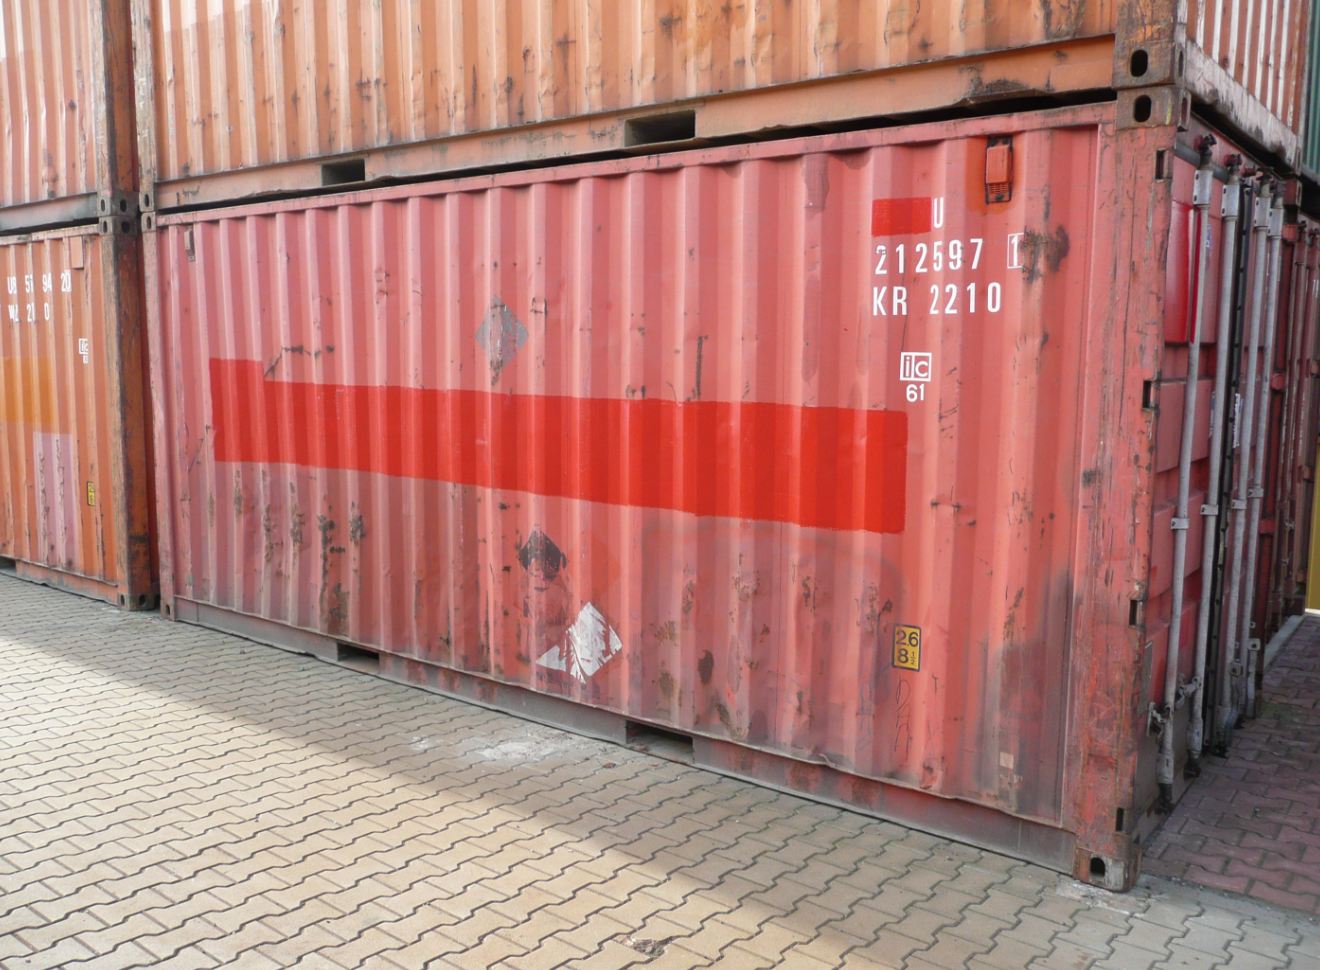 Přepravní kontejnery si u firmy Metrans můžete koupit i levně pronajmout.